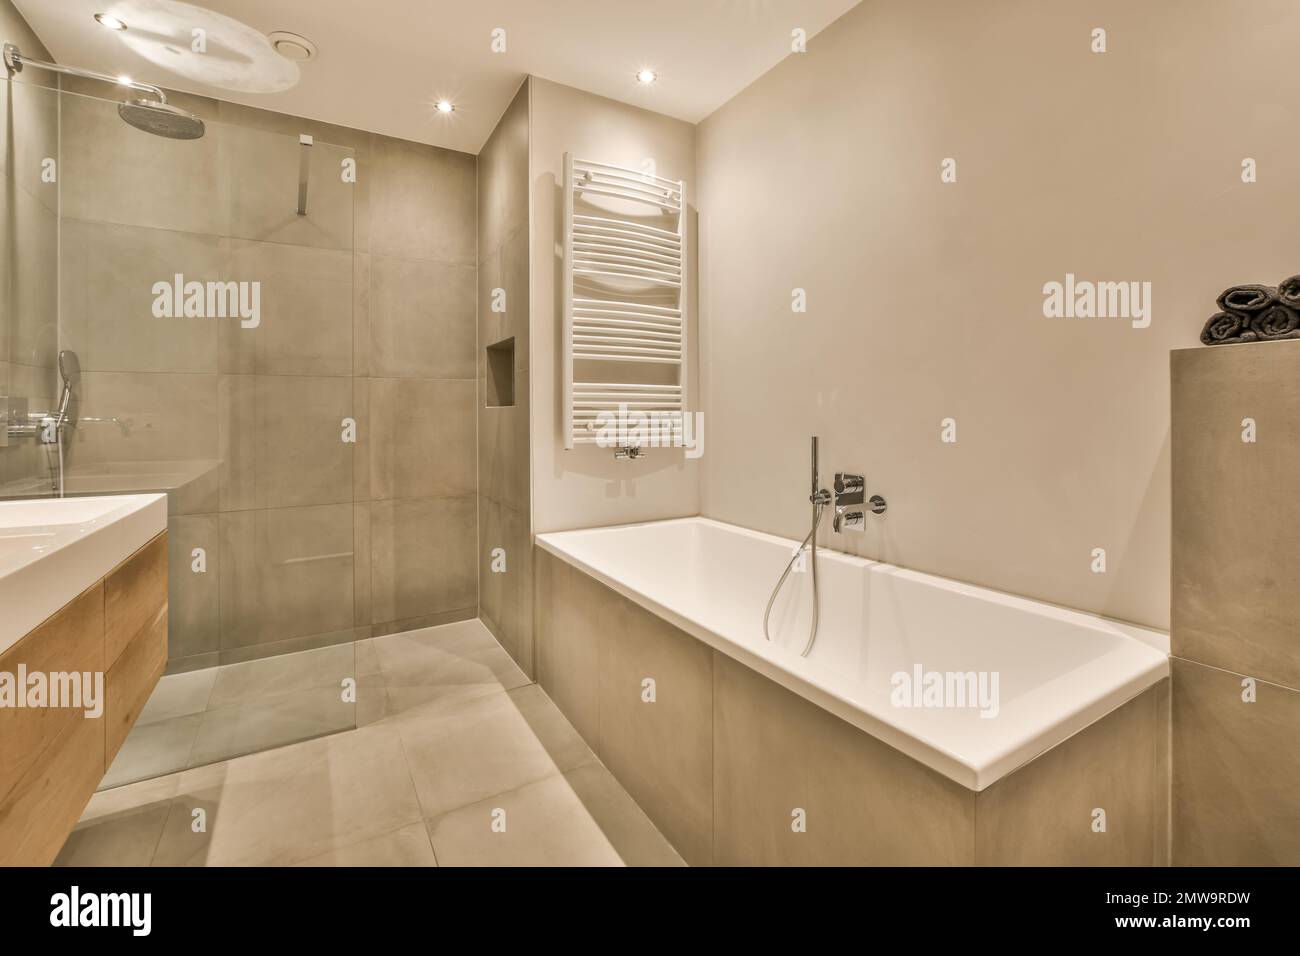 une salle de bain avec baignoire et douche dans la partie centrale de la  pièce photo est prise du côté Photo Stock - Alamy